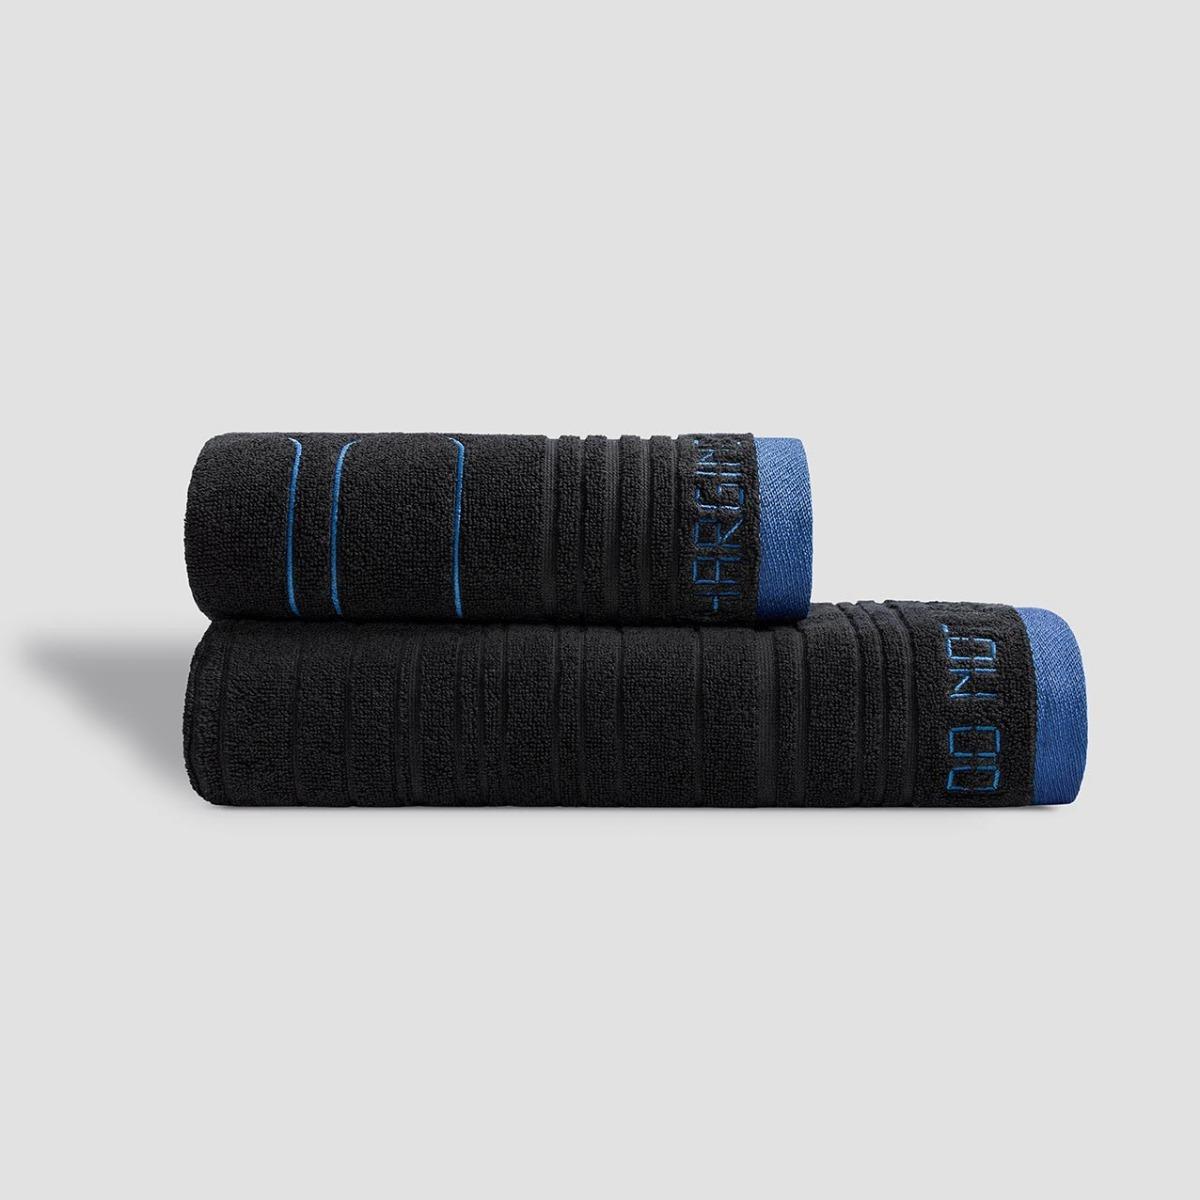 Полотенце Togas Макс чёрное с синим 70х140 см полотенце классик темно синий р 50х90